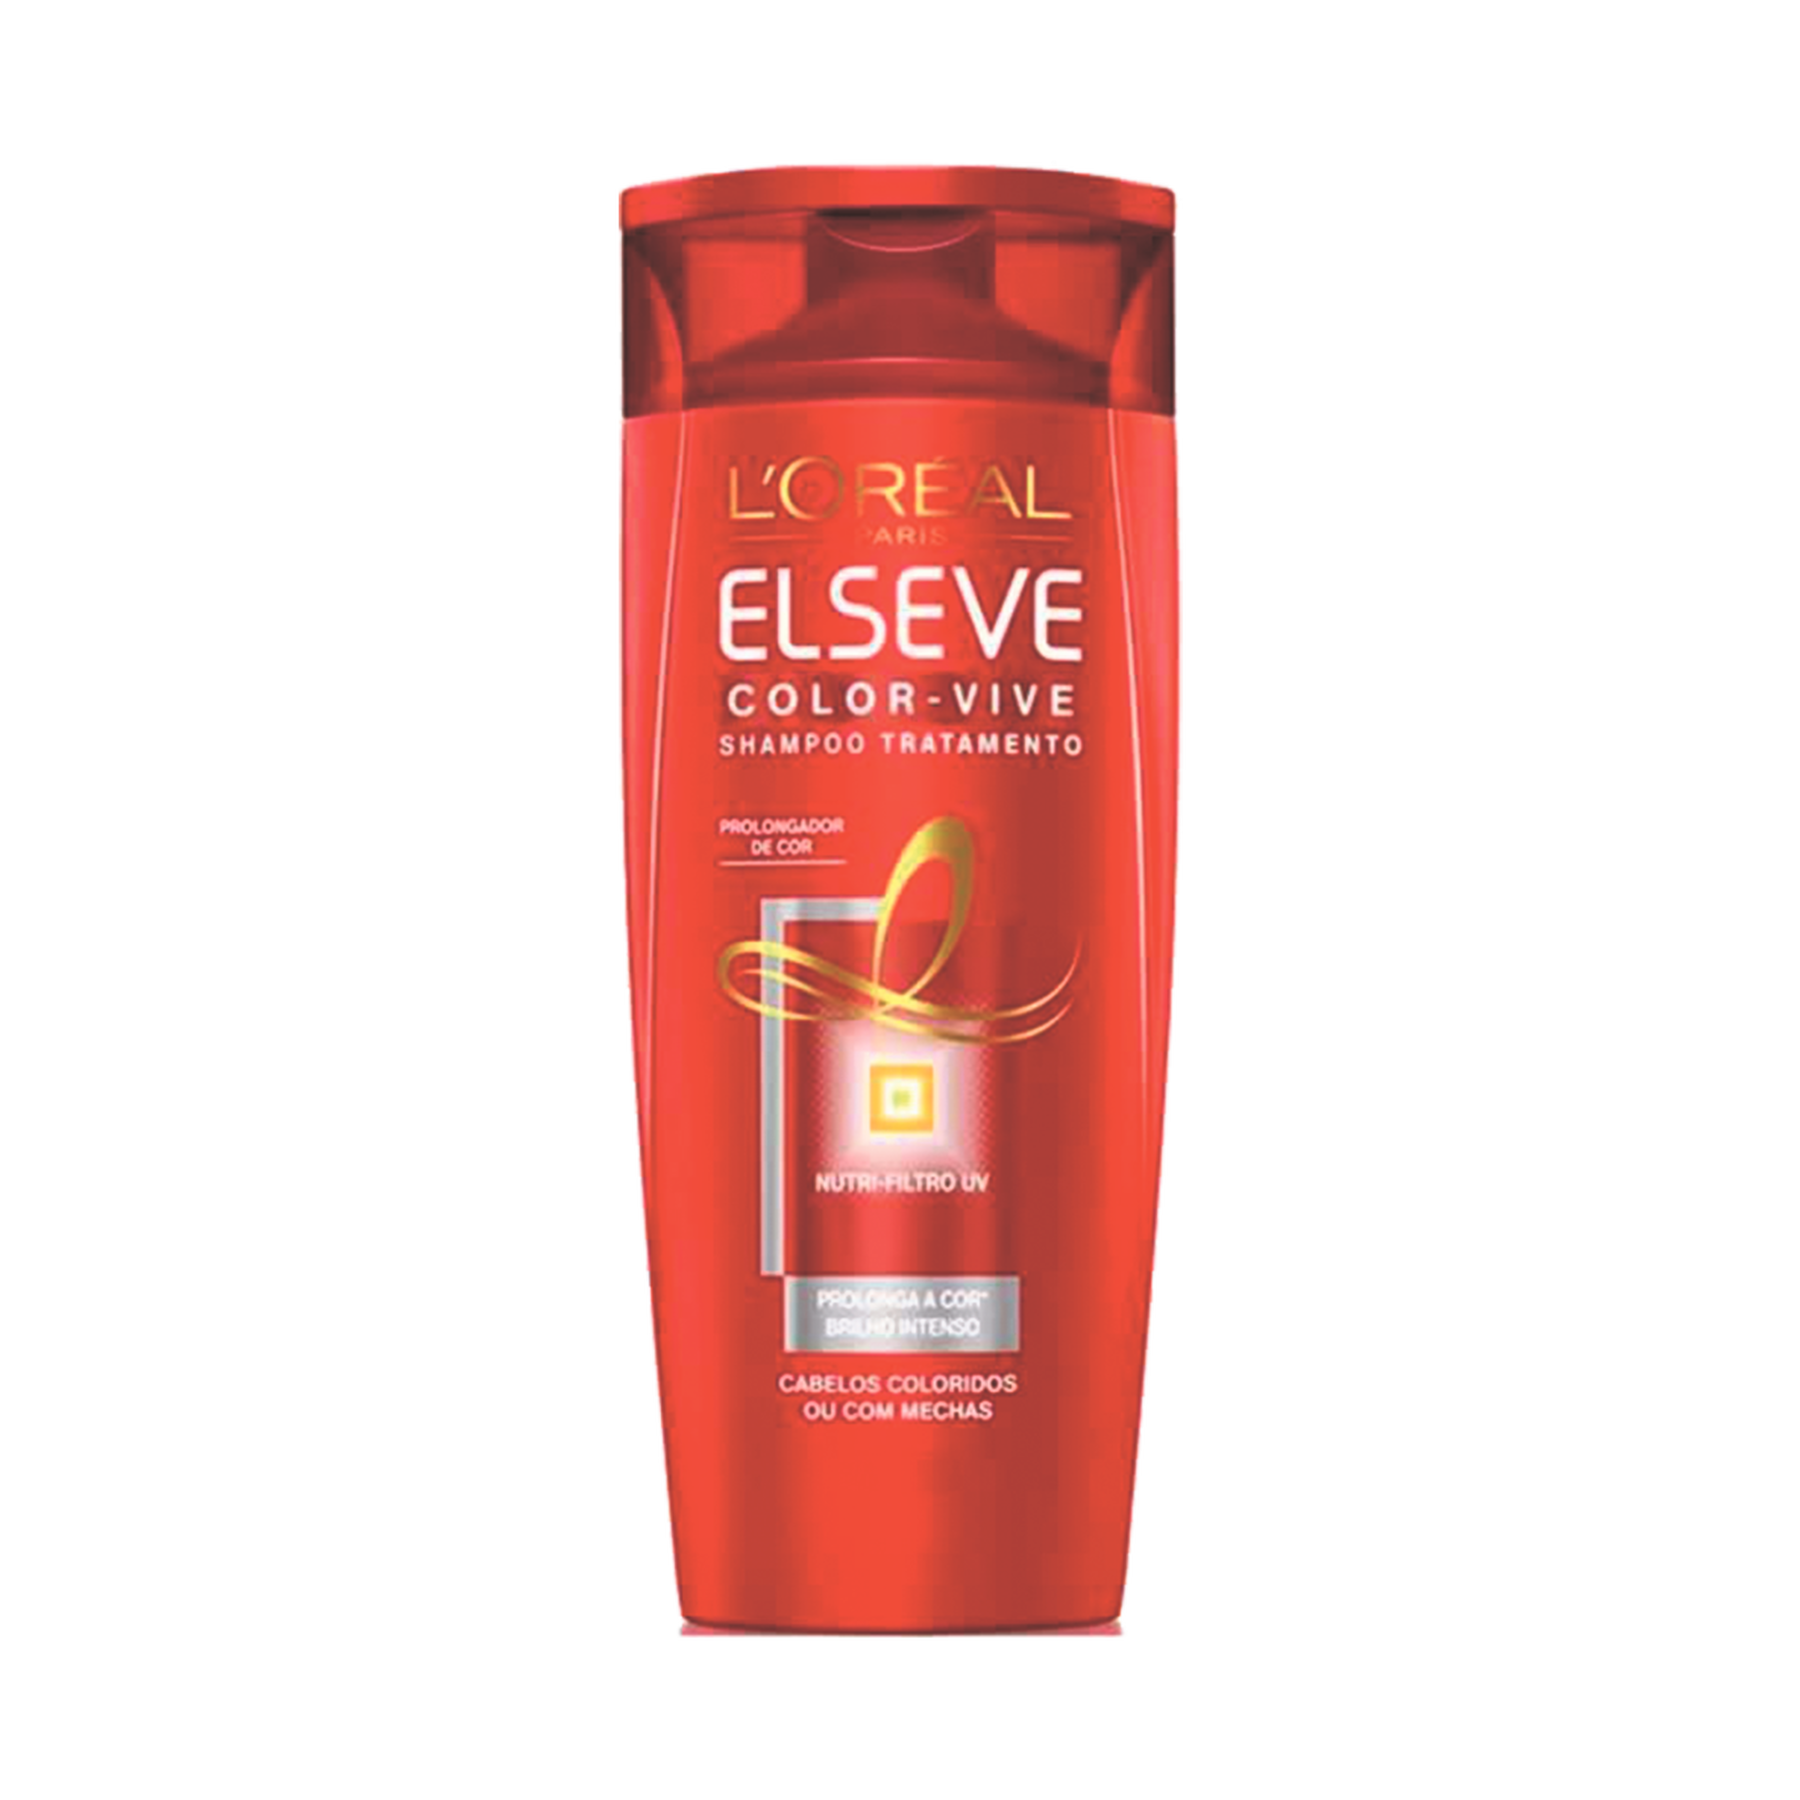 Shampoo Tratamento Color-Vive Elseve L'Oréal Paris Frasco 400ml